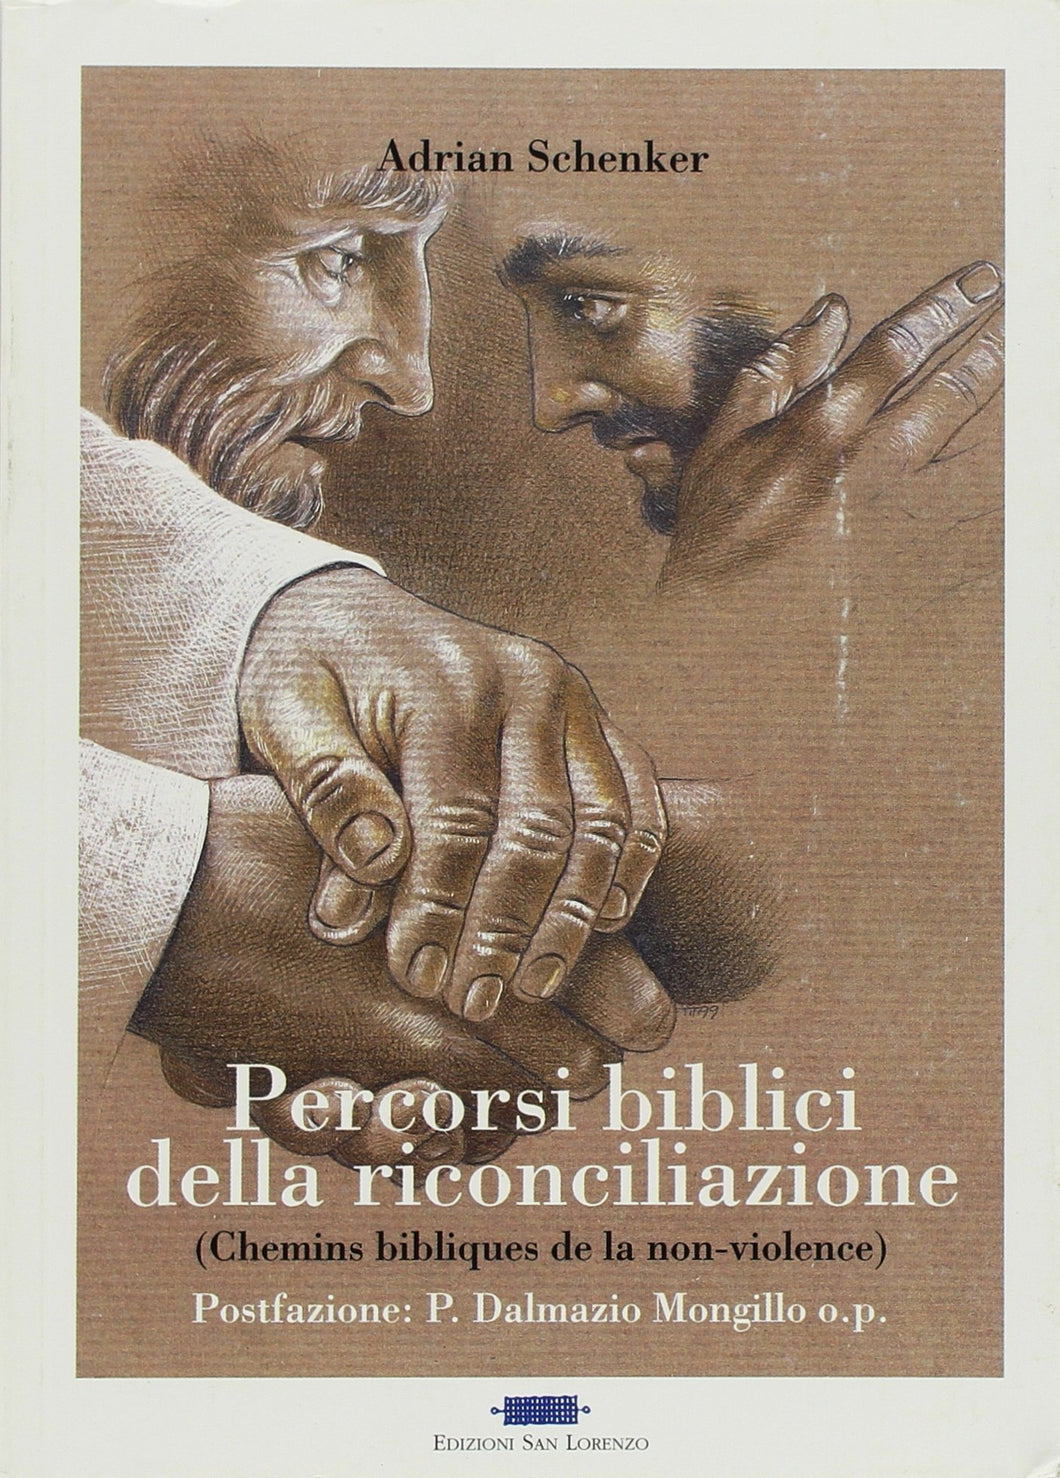 Adrian Schenker - Percorsi biblici della riconciliazione - Edizioni San Lorenzo